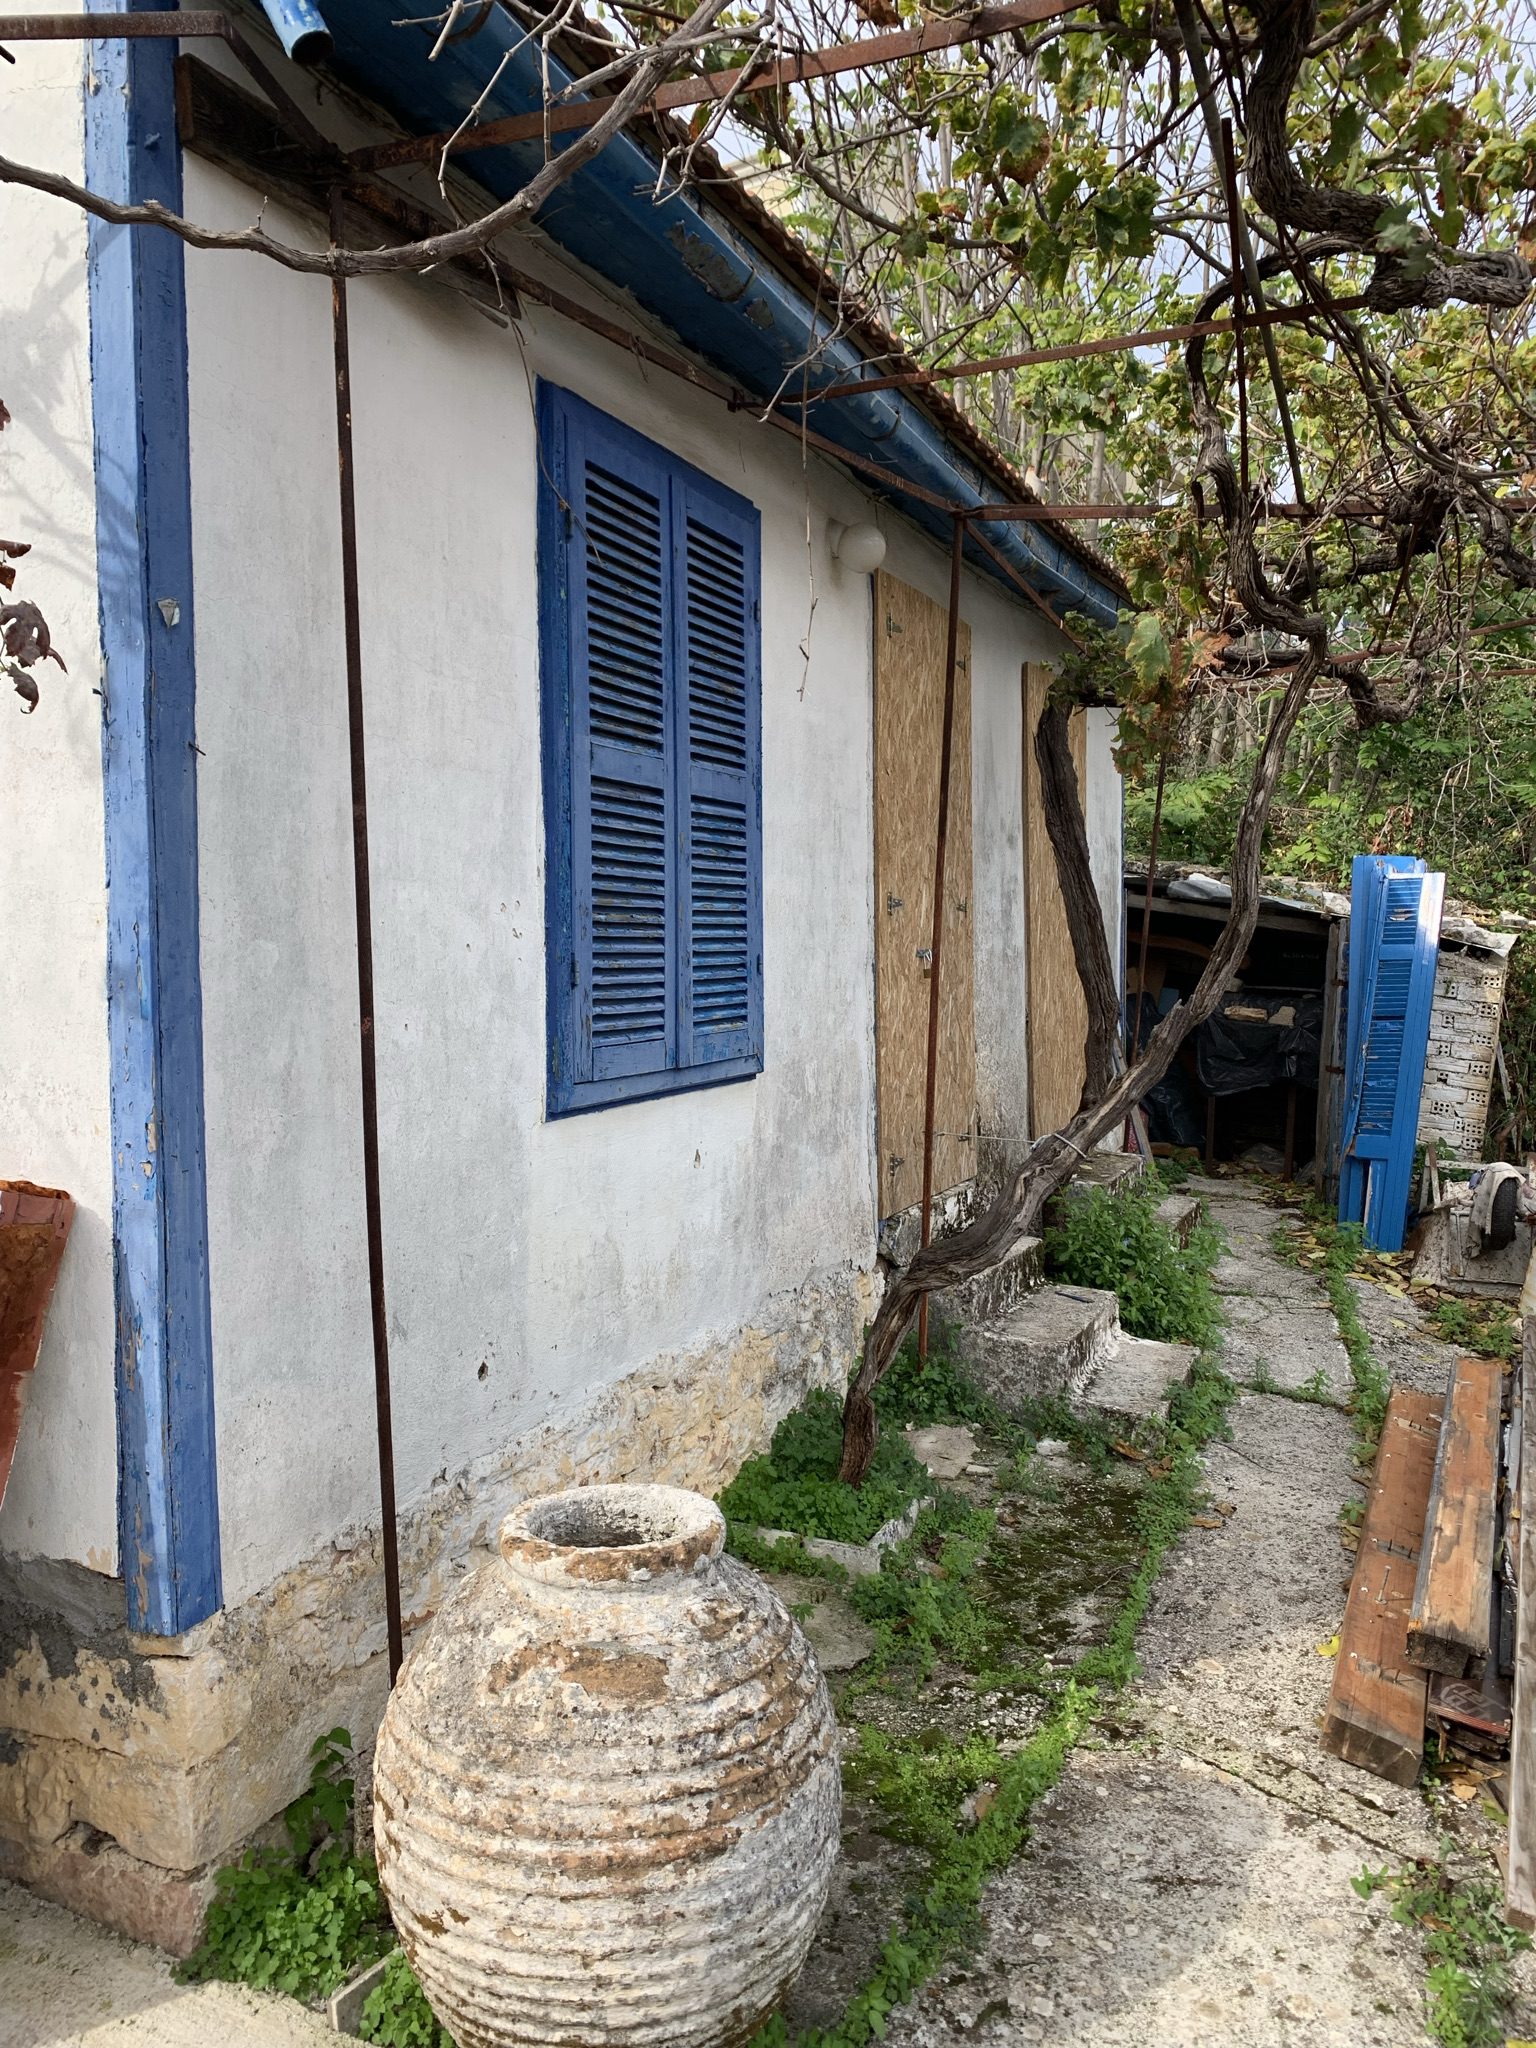 Εξωτερικό σπίτι προς πώληση στην Ιθάκα, Βαθύ